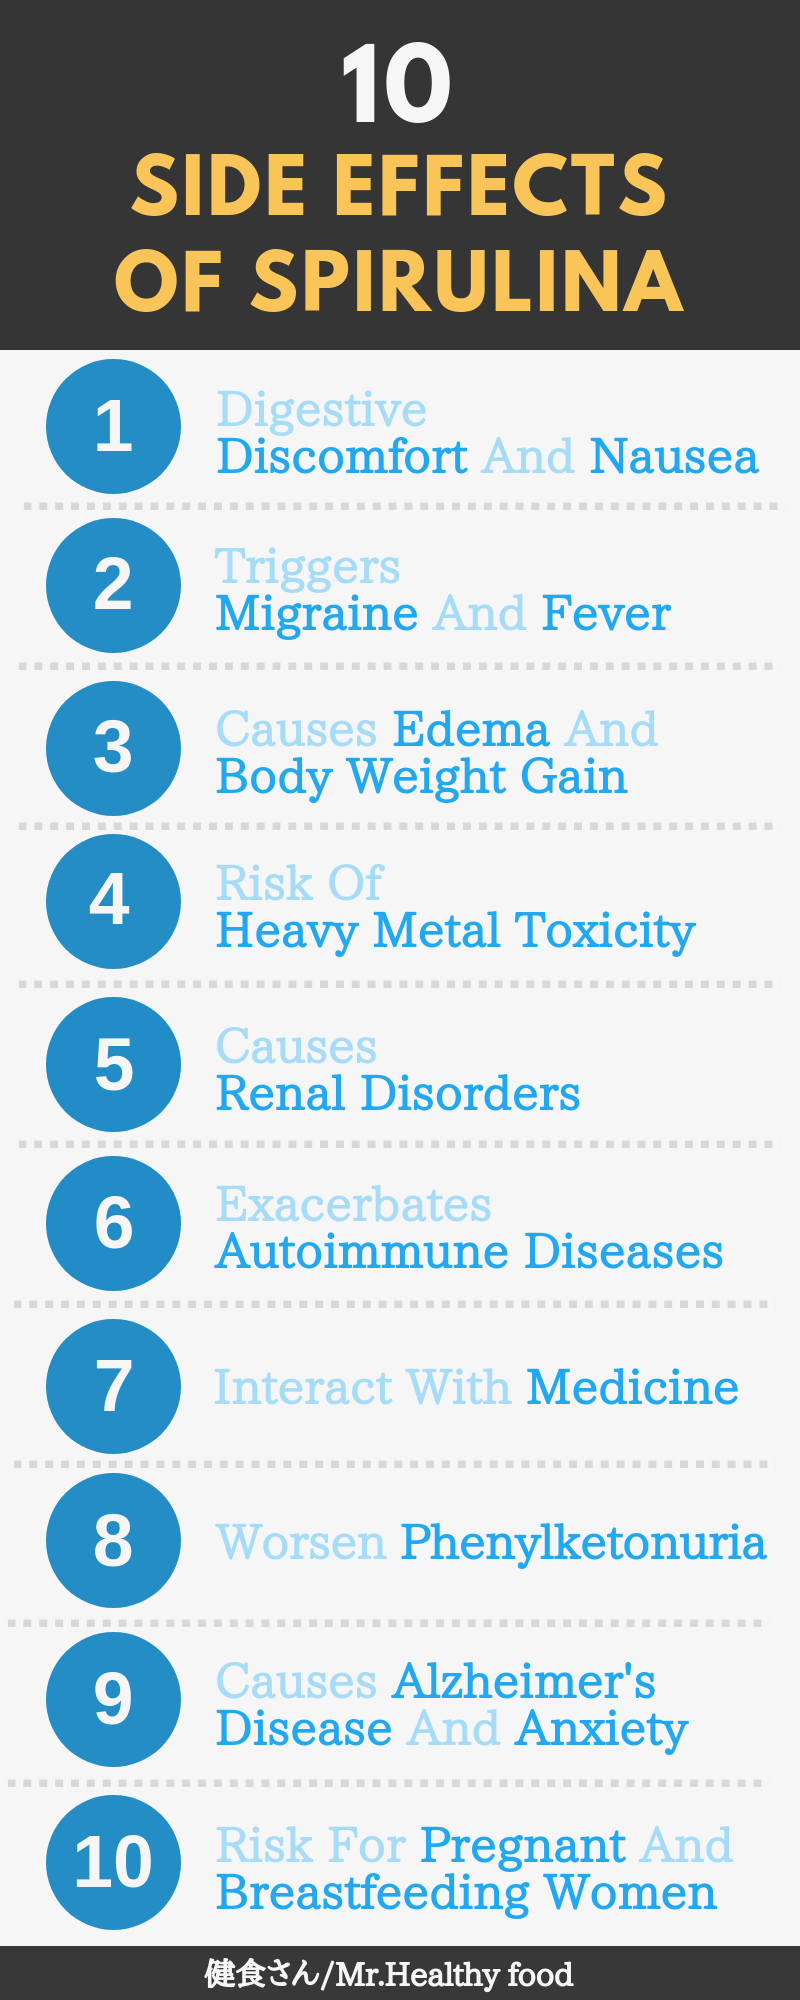 スピルリナの10の副作用: 1.消化不良や吐き気(Digestive Discomfort And Nausea)、2.片頭痛と発熱が出る(Triggers Migraine And Fever)、3.浮腫が生じ、体重が増加する(Causes Edema And Body Weight Gain)、4.有害な重金属が含まれる(Risk Of Heavy Metal Toxicity)、5.腎障害を起こす(Causes Renal Disorders)、6.自己免疫疾患の症状が悪化する(Exacerbates Autoimmune Diseases)、7.薬と相互作用を起こす(Interact With Medicine)、8.フェニルケトン尿症(PKU)の病状が悪化する(Worsen Phenylketonuria)、9.アルツハイマー病や不安障害を引き起こす(Causes Alzheimer's Disease And Anxiety)、10.妊娠中や授乳中の女性のリスク(Risk For Pregnant And Breastfeeding Women)。